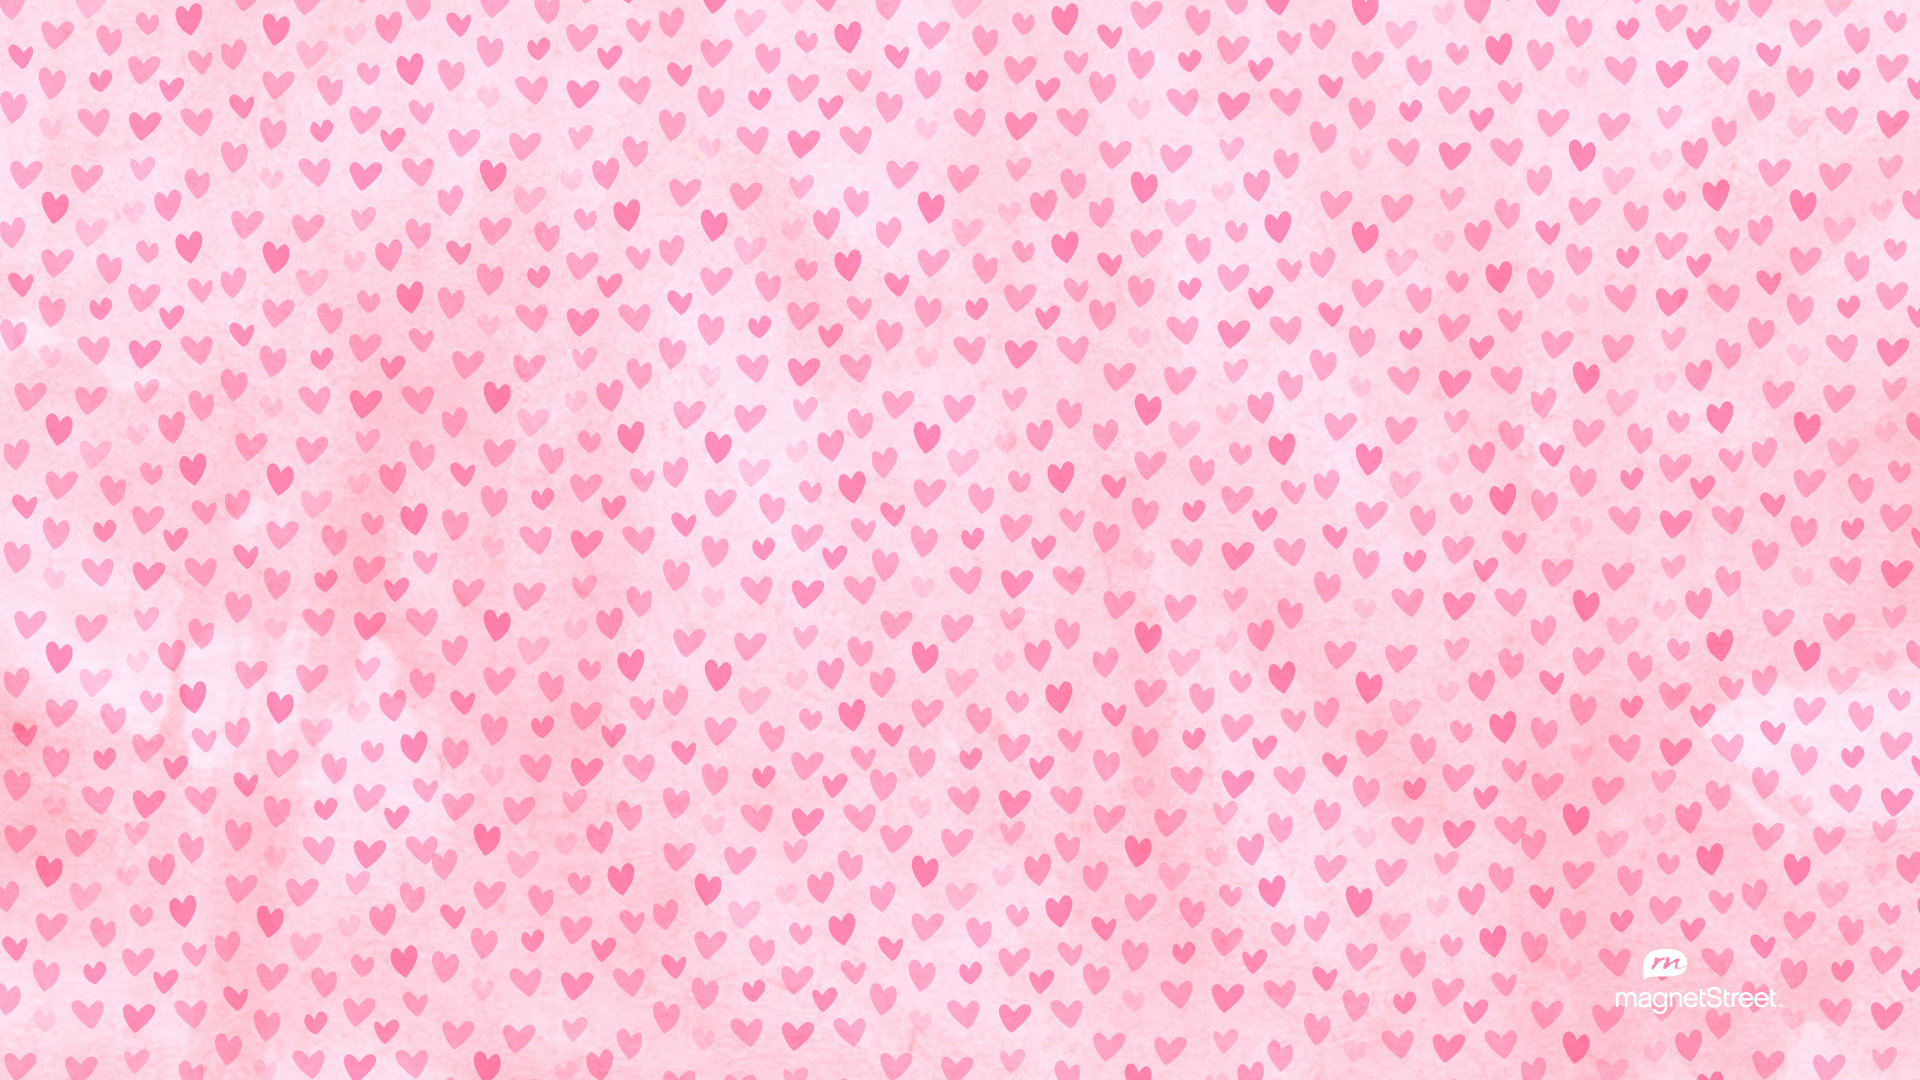 Hình nền desktop đầy màu sắc và đẹp mắt cho ngày Valentine sẽ mang lại cảm giác yêu đời cho bạn. Từ những hình ảnh cặp đôi hạnh phúc đến bó hoa romantictic, bạn sẽ chọn được một bức hình nền đẹp nhất để tặng cho máy tính của mình.